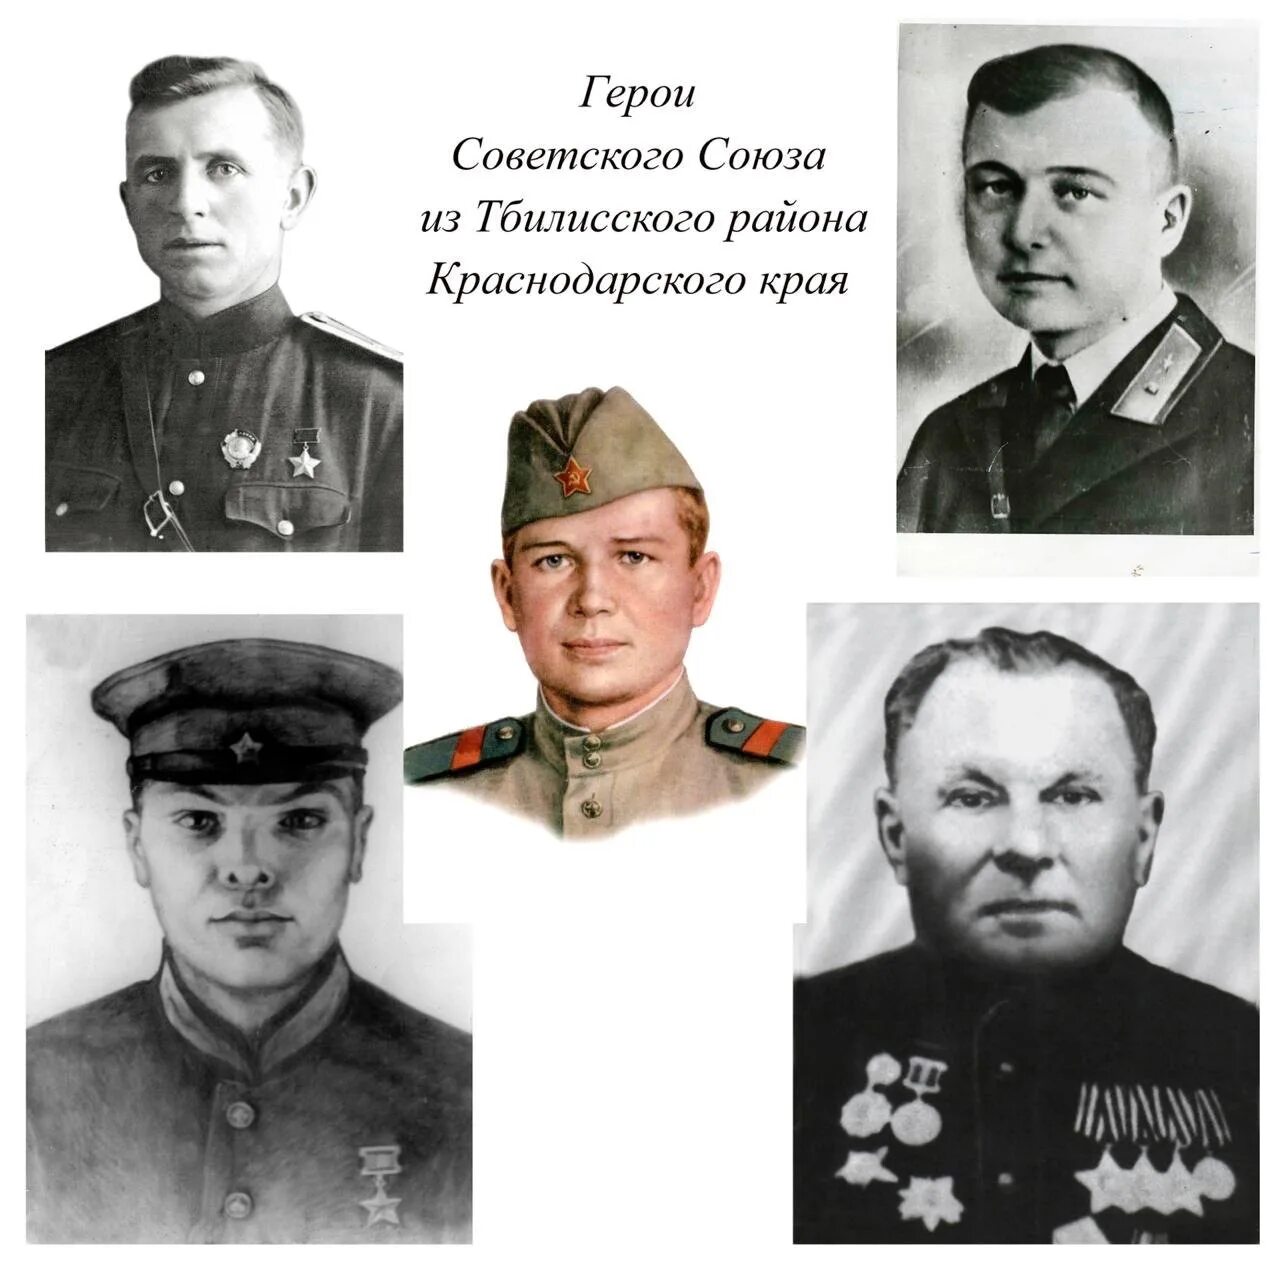 Четверо героев. Четыре героя советского Союза.